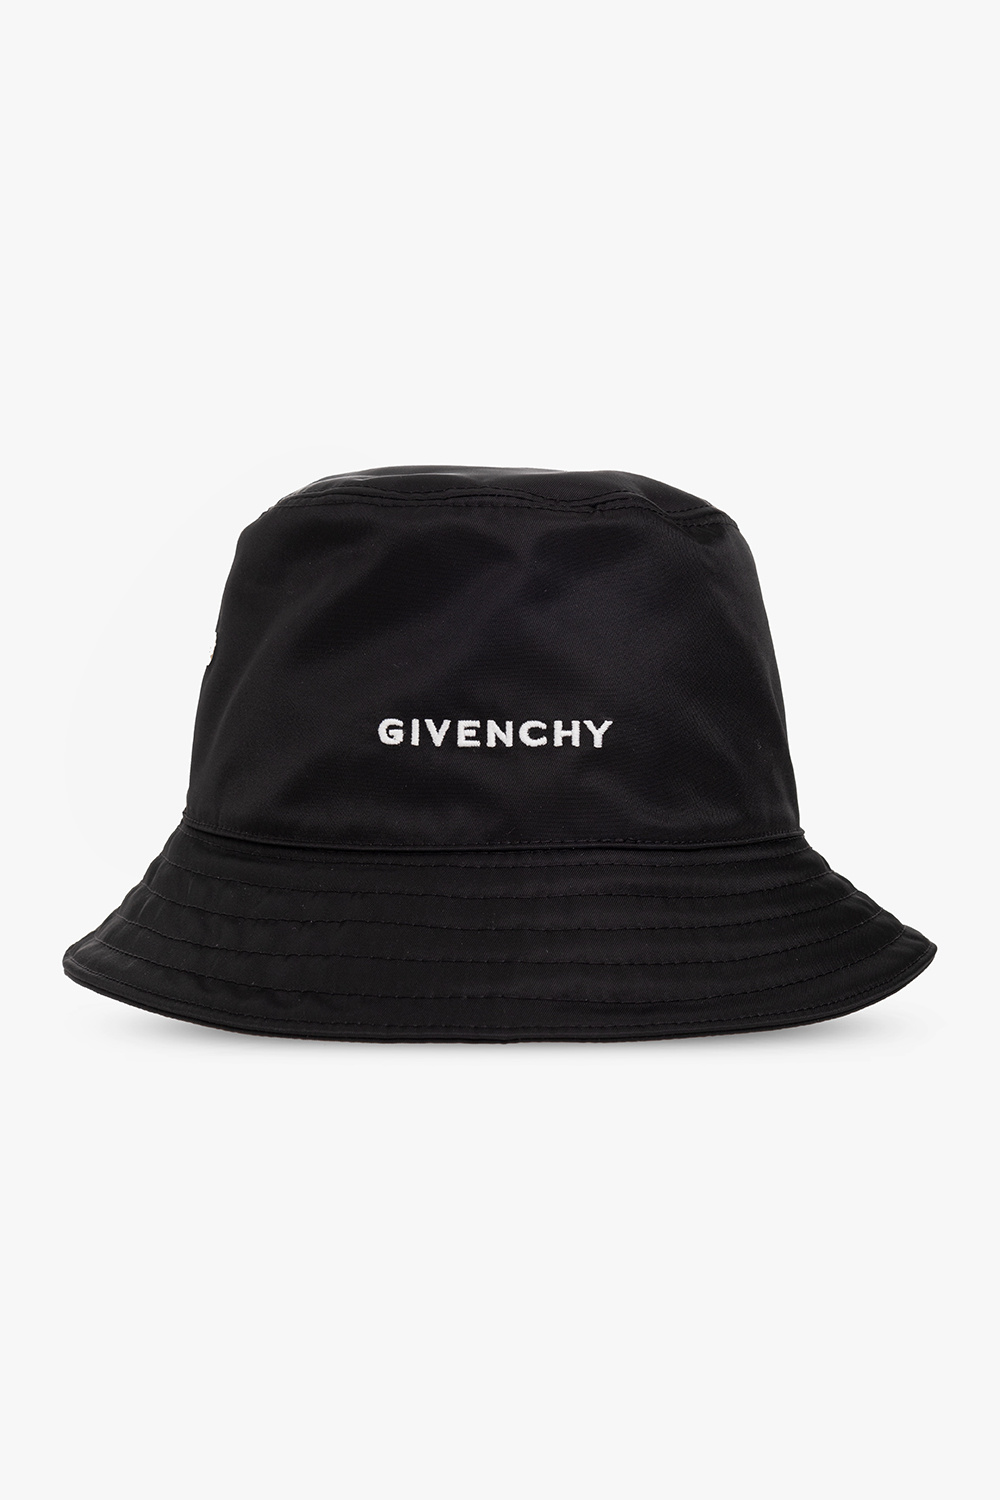 Givenchy wdx treme peak cap